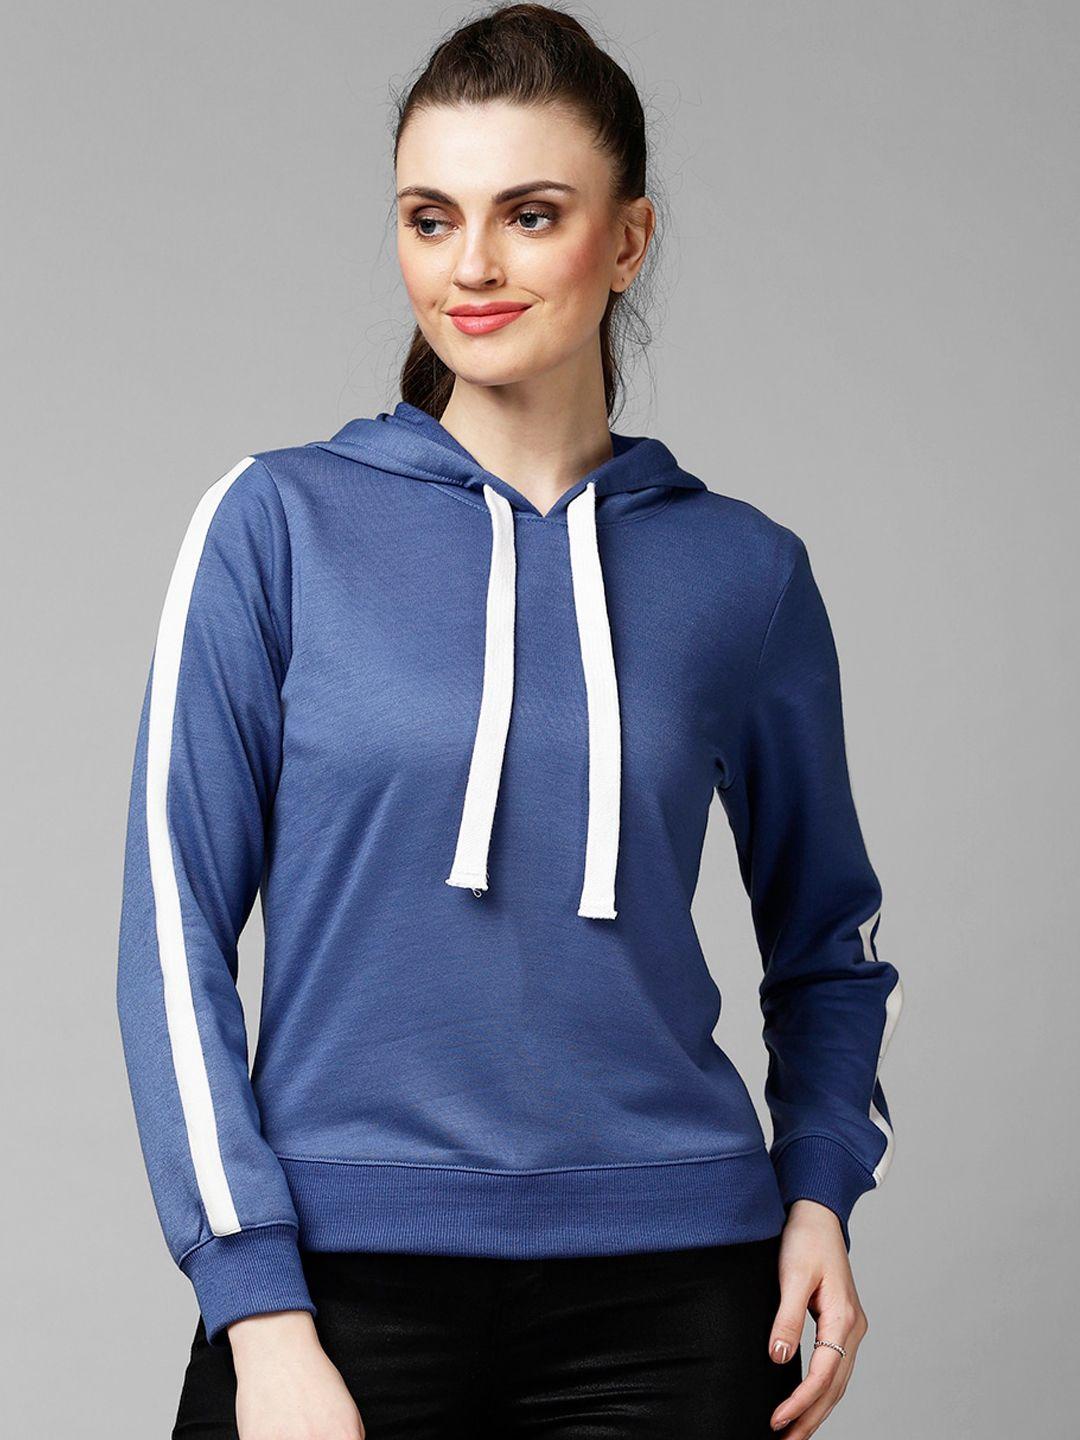 kassually women blue solid sweatshirt